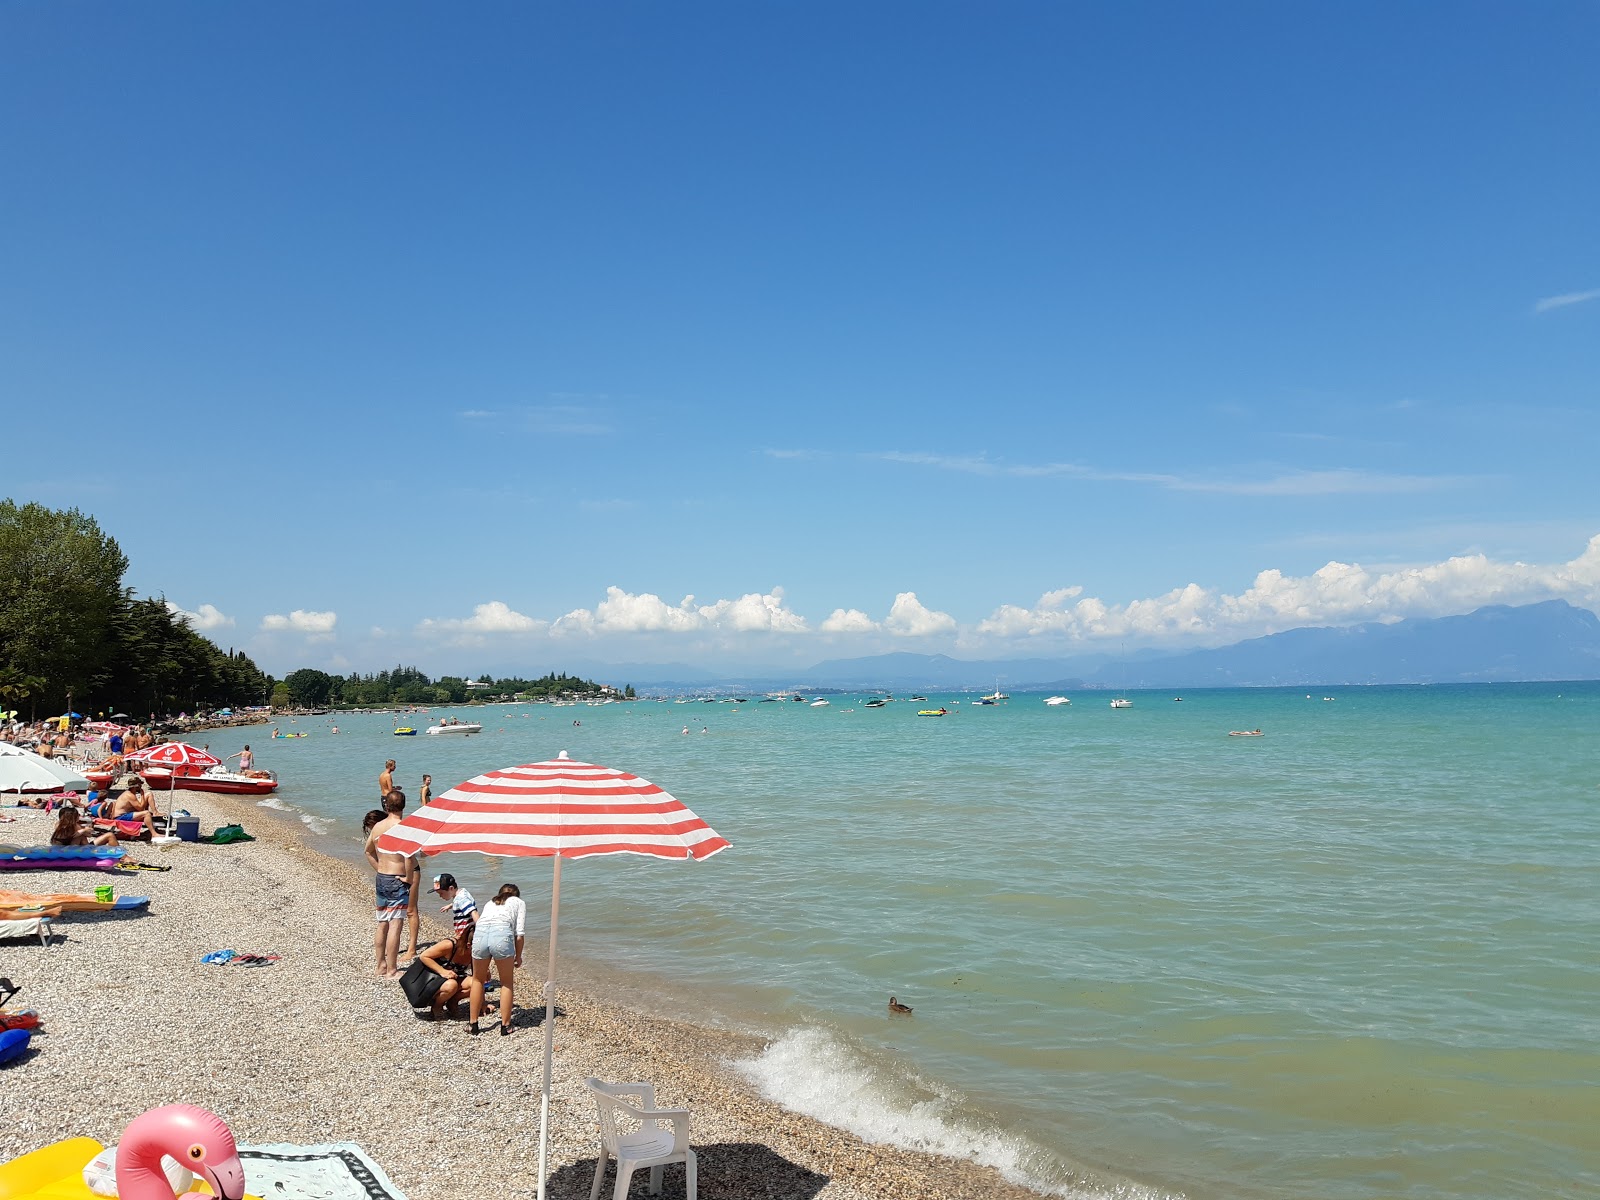 Spiaggia Dei Capuccini的照片 具有非常干净级别的清洁度